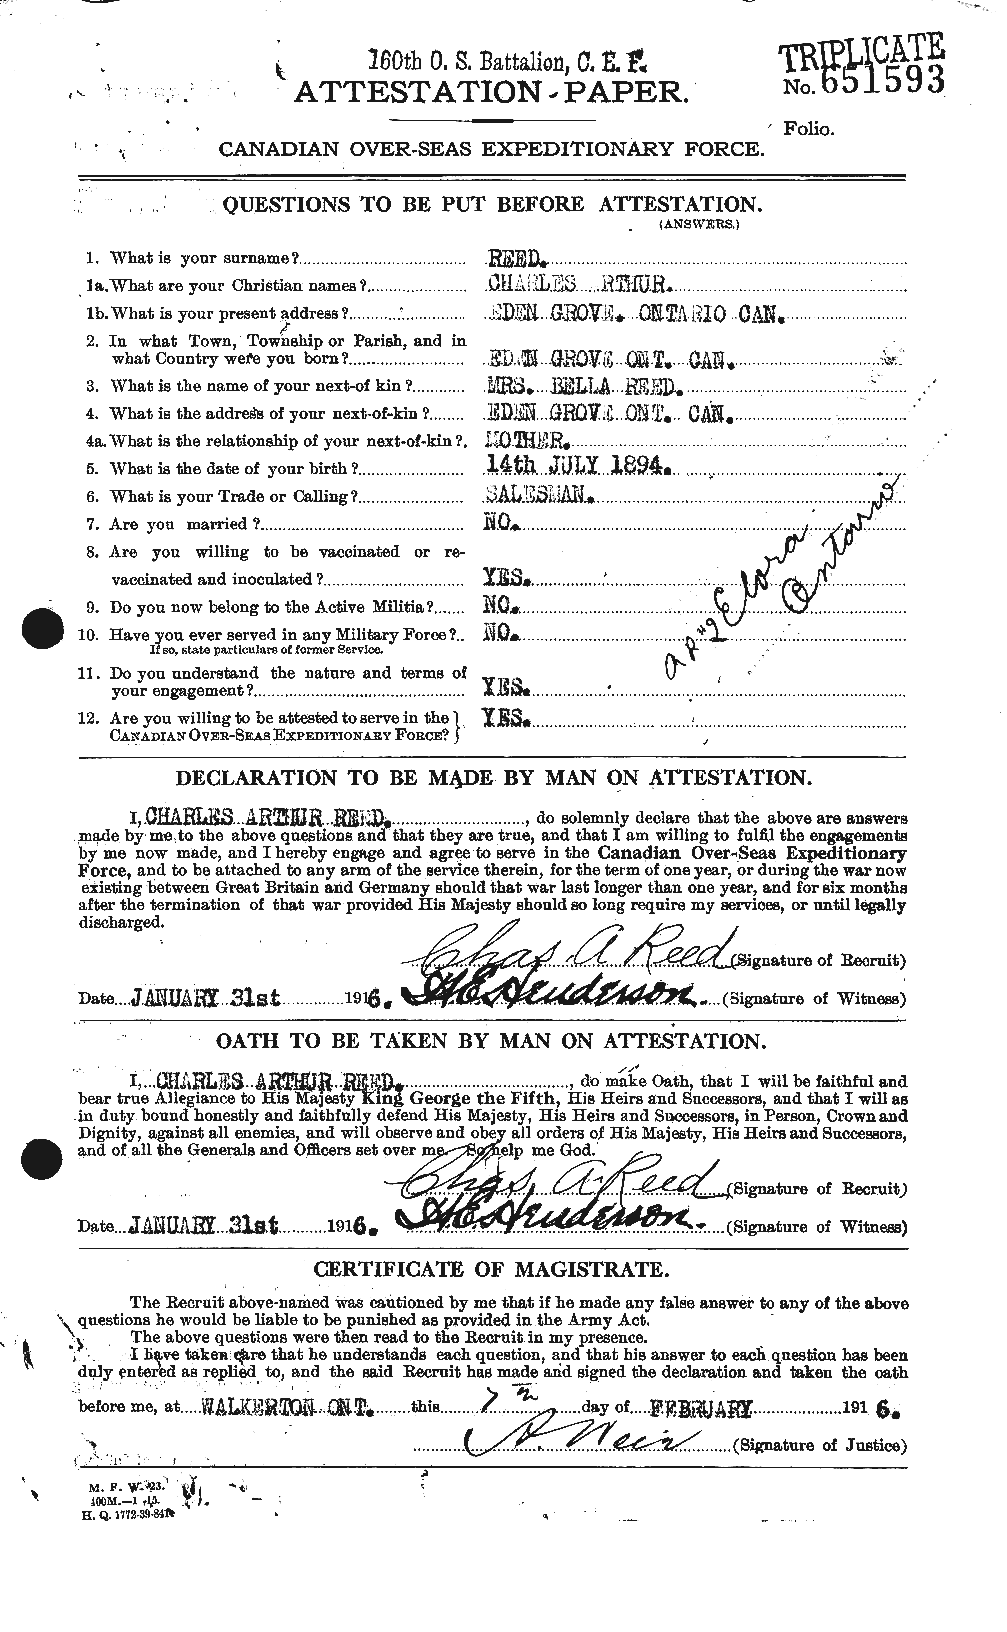 Dossiers du Personnel de la Première Guerre mondiale - CEC 596327a